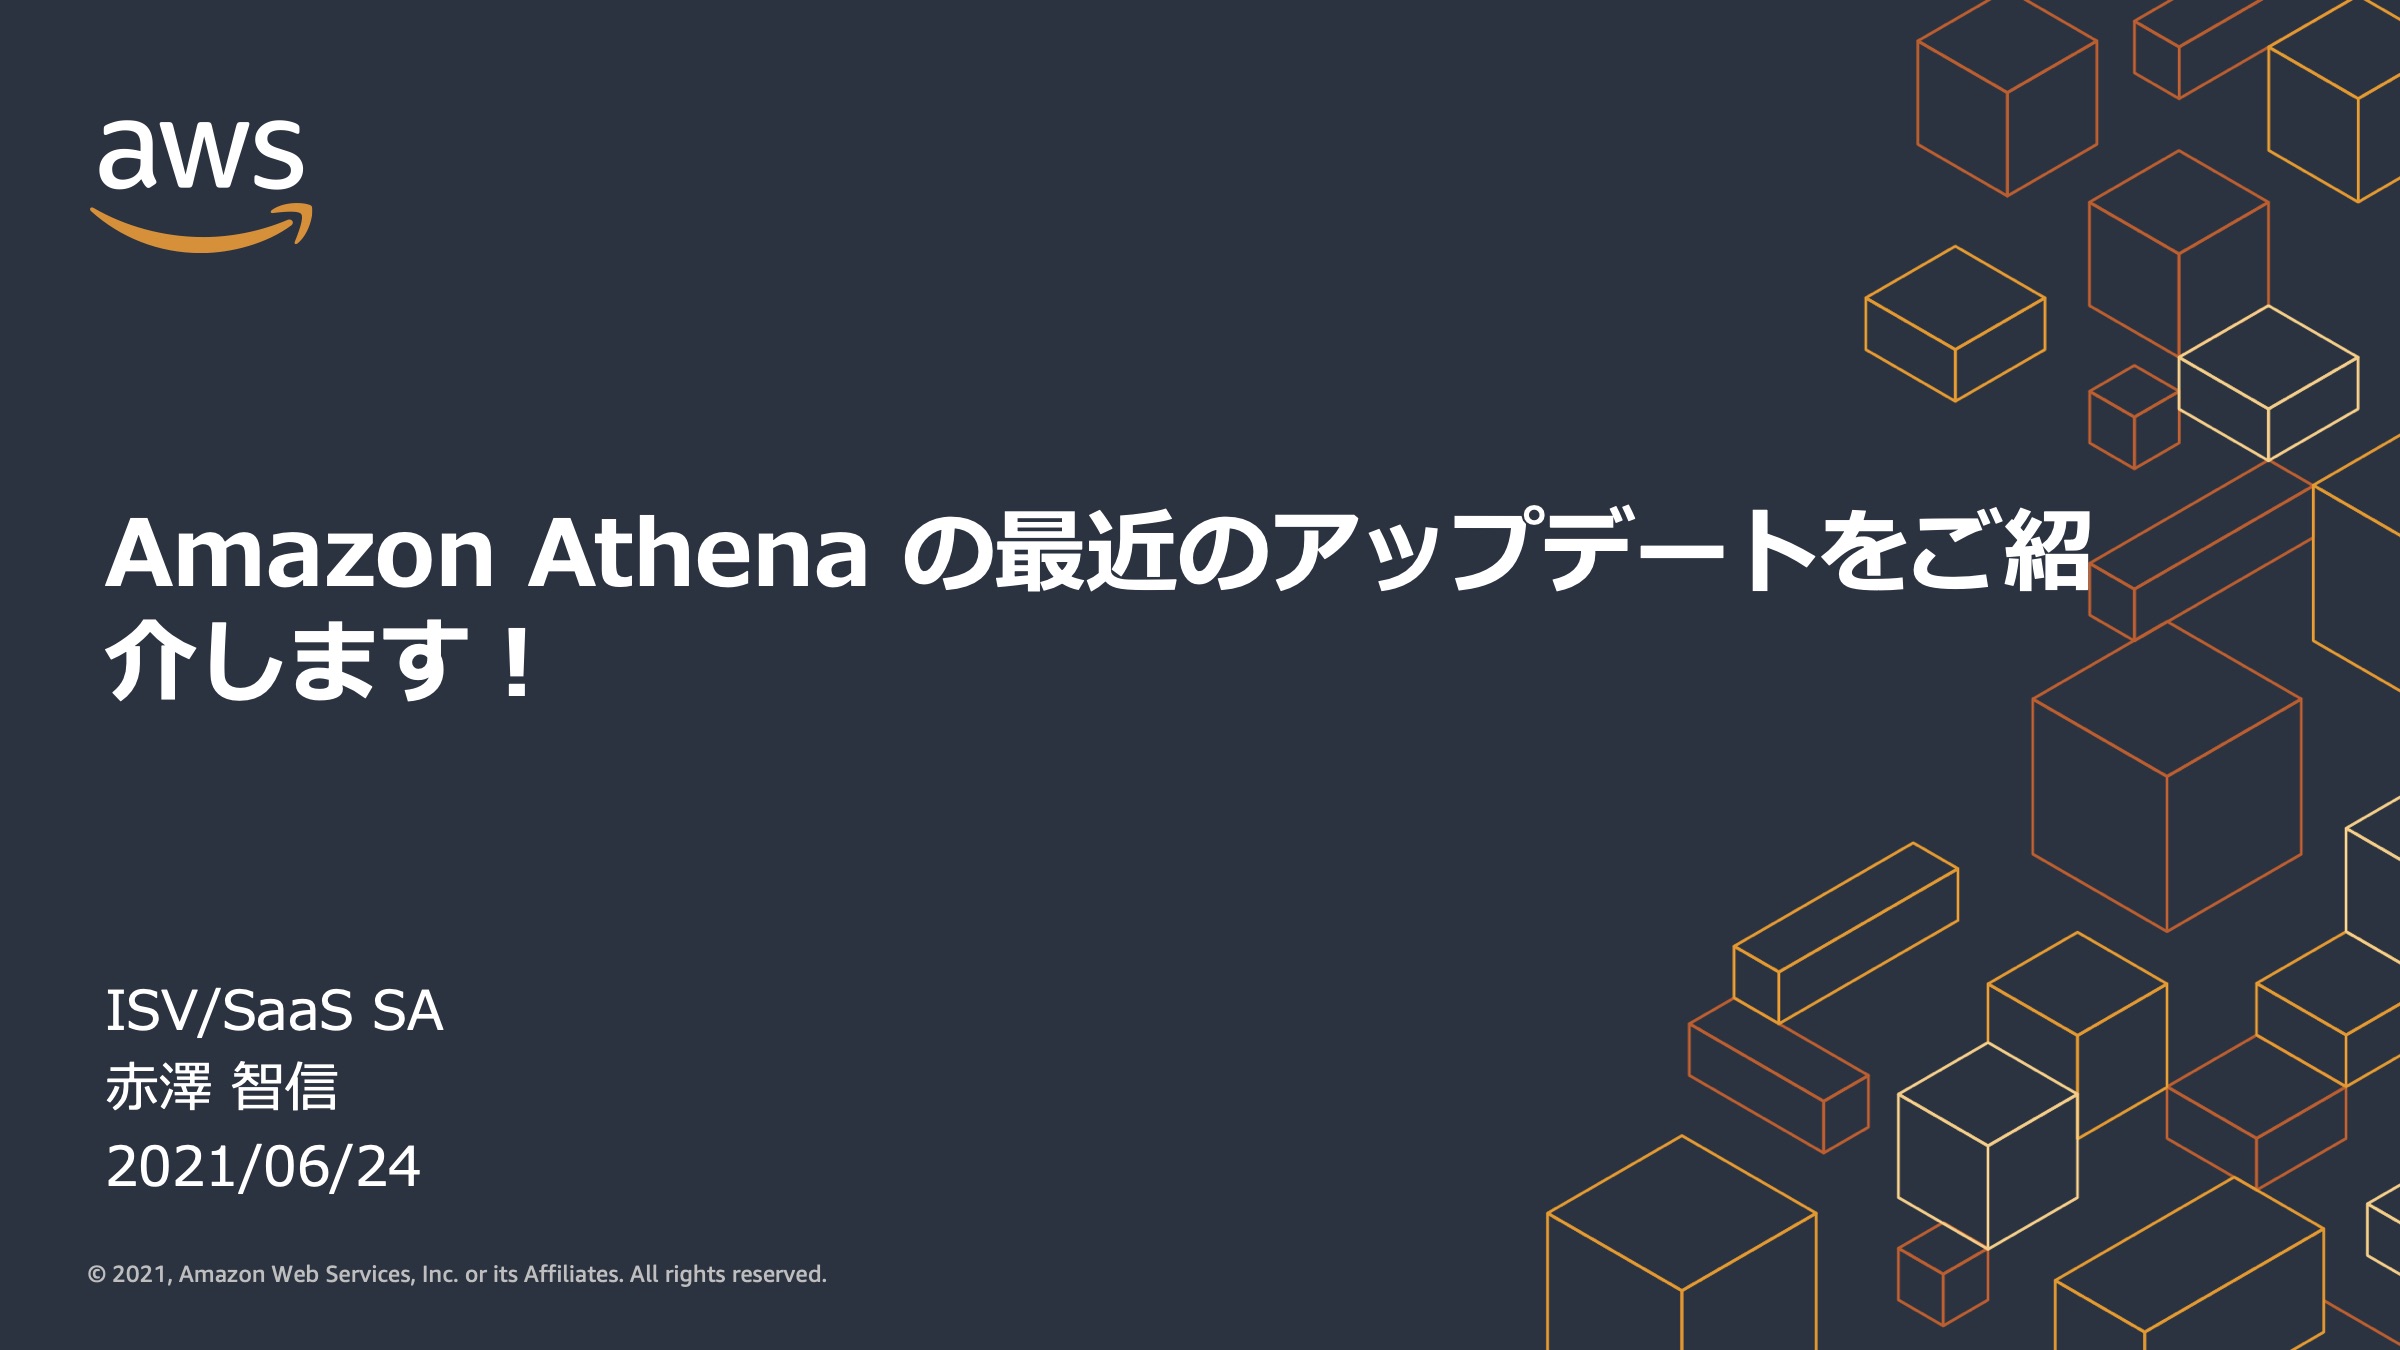 Amazon Athena 最近のアップデートをご紹介します